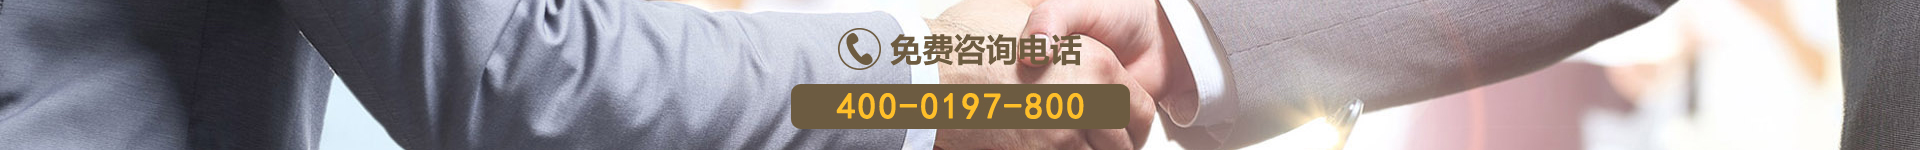 吉顺王插座营销电话4000197800